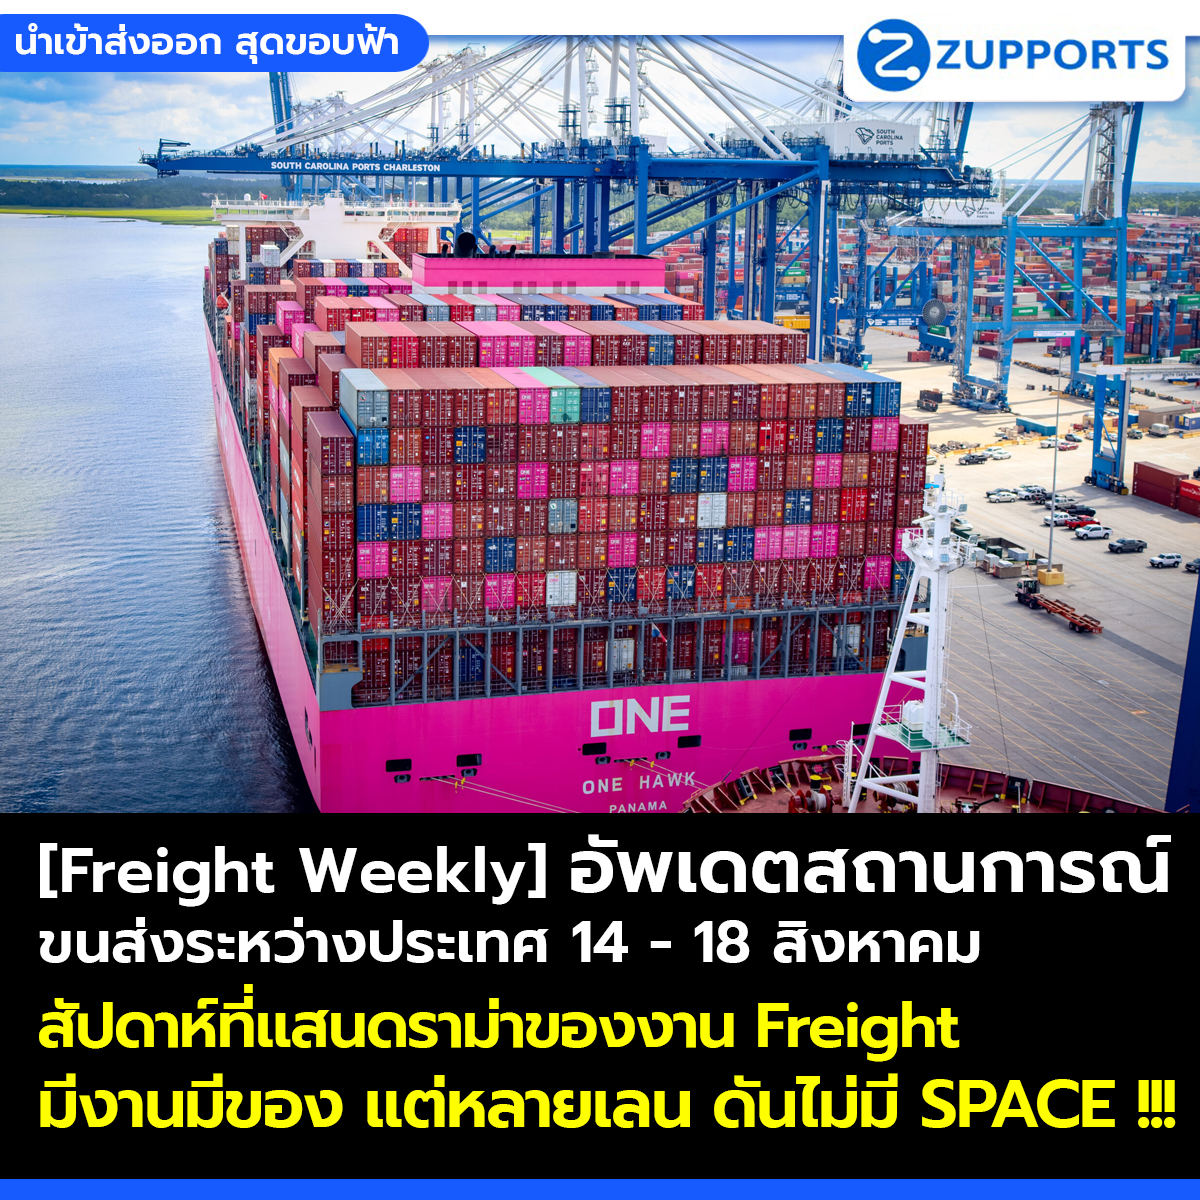 [Freight Weekly] : อัพเดตสถานการณ์ขนส่งสินค้าระหว่างประเทศ ประจำวันที่ 14 -18 สิงหาคม กับ ZUPPORTS !!! สัปดาห์ที่แสนดราม่าของงาน Freight มีงานมีของ แต่หลายเลน ดันไม่มี SPACE !!!